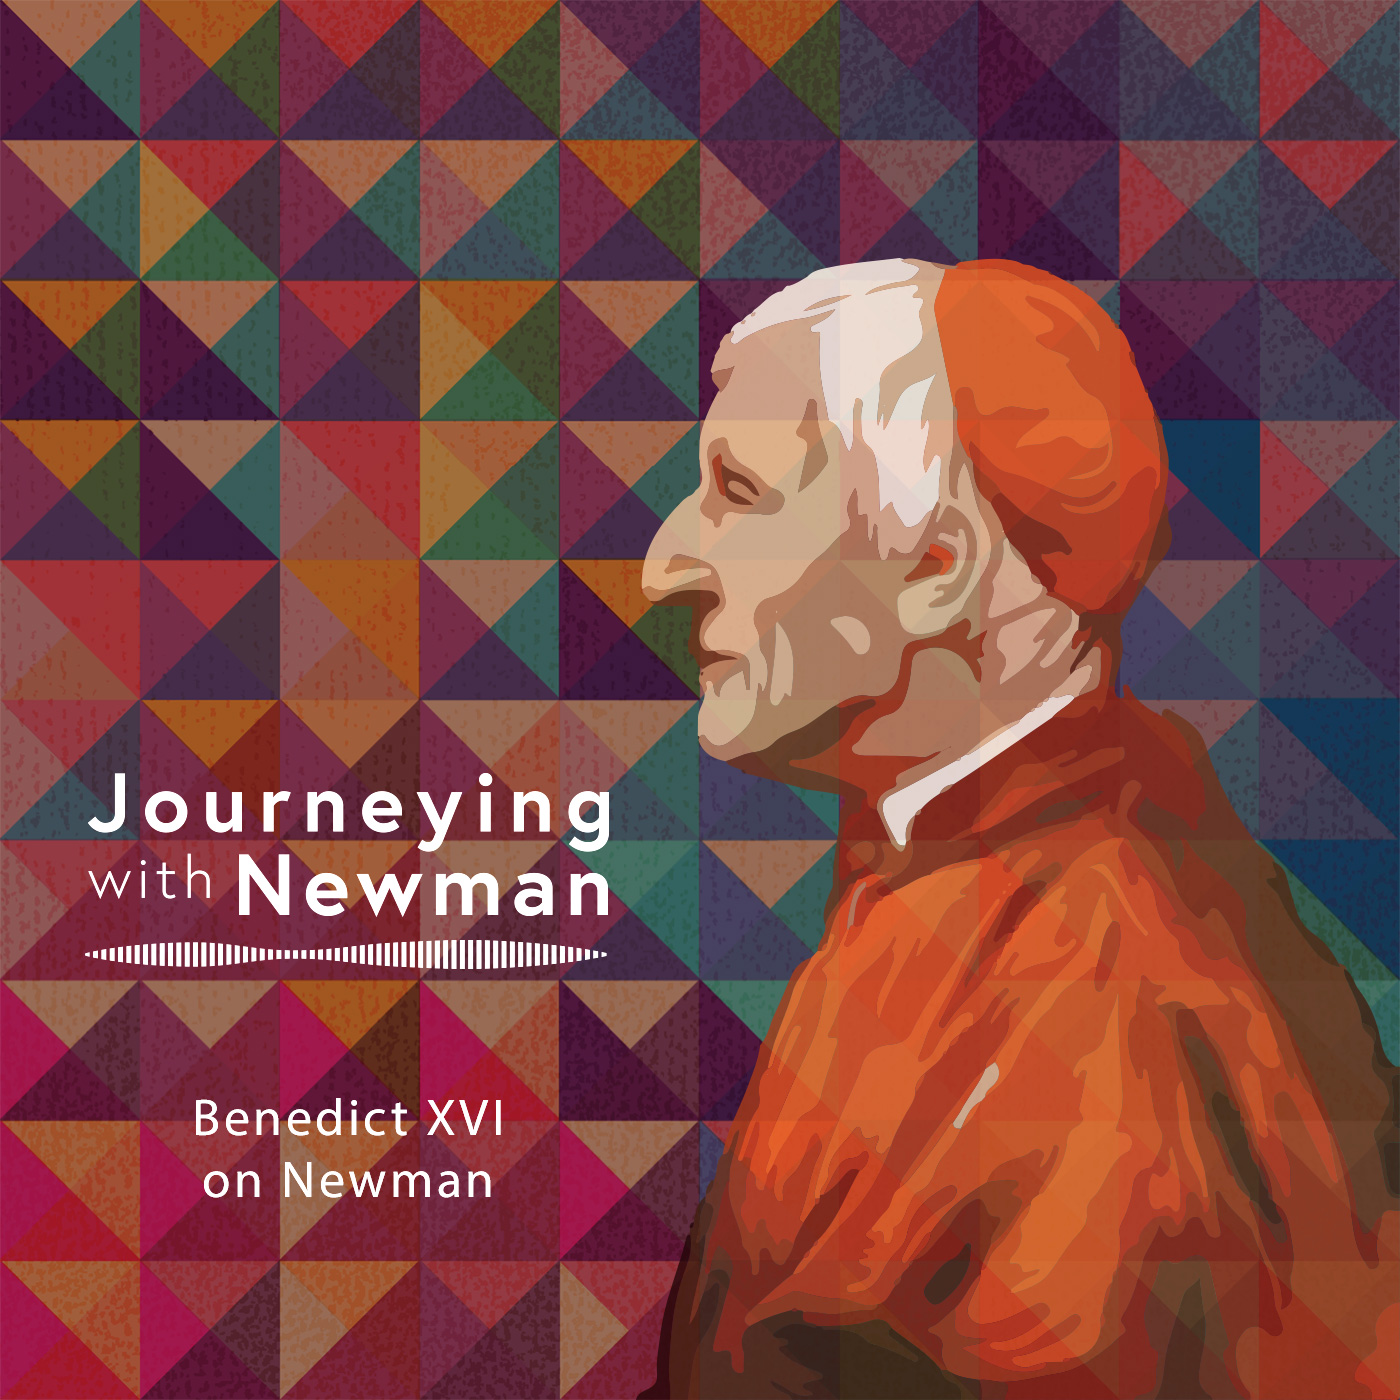 Benedict XVI on Newman